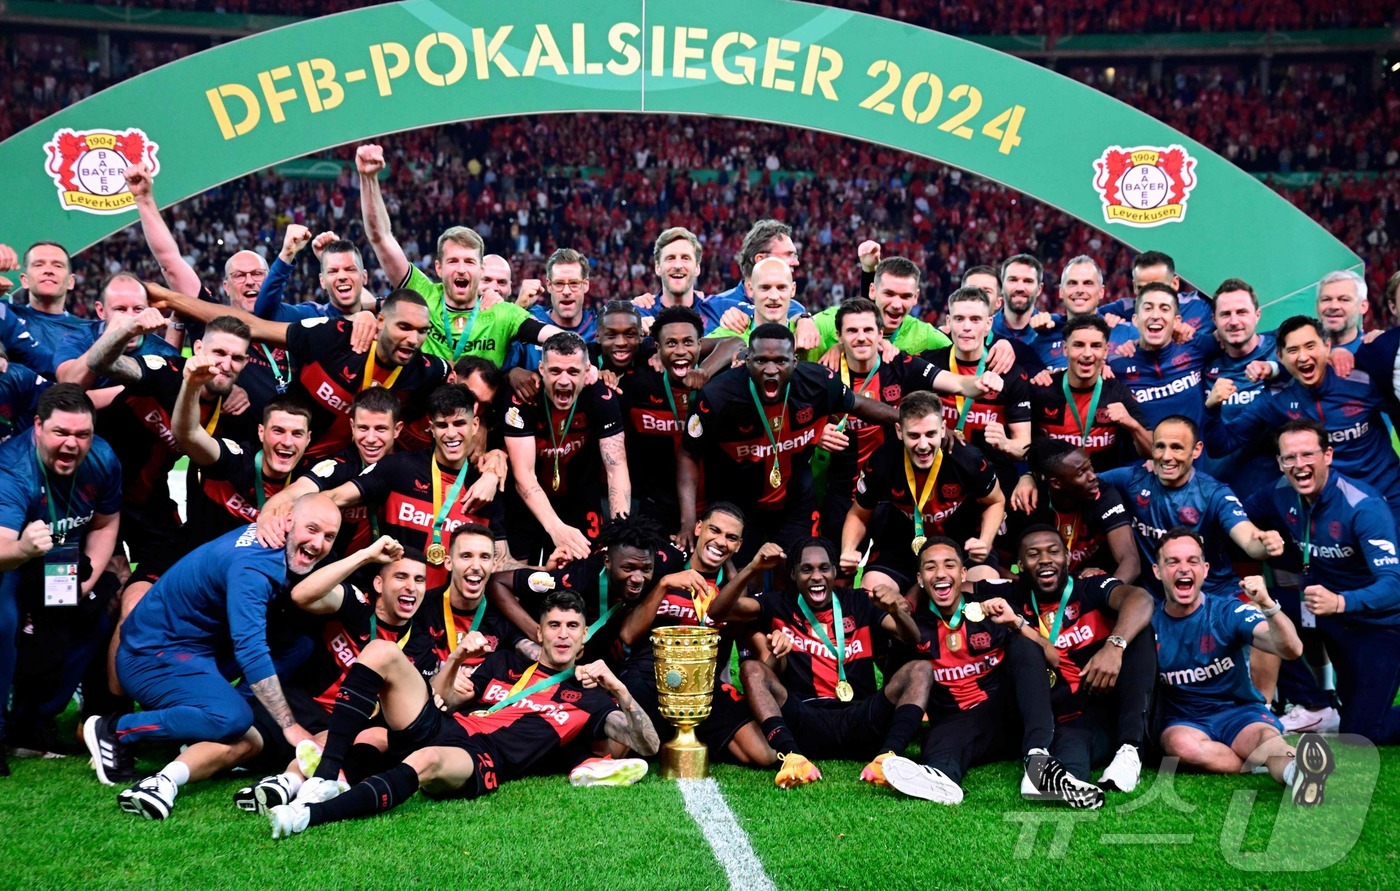 (베를린 AFP=뉴스1) 우동명 기자 = 레버쿠젠 선수들이 25일(현지시간) 독일 베를린의 올림피아 슈타디온에서 열린 독일축구협회(DFB) 포칼 결승서 카이저슬라우테른를 꺾은 뒤 …